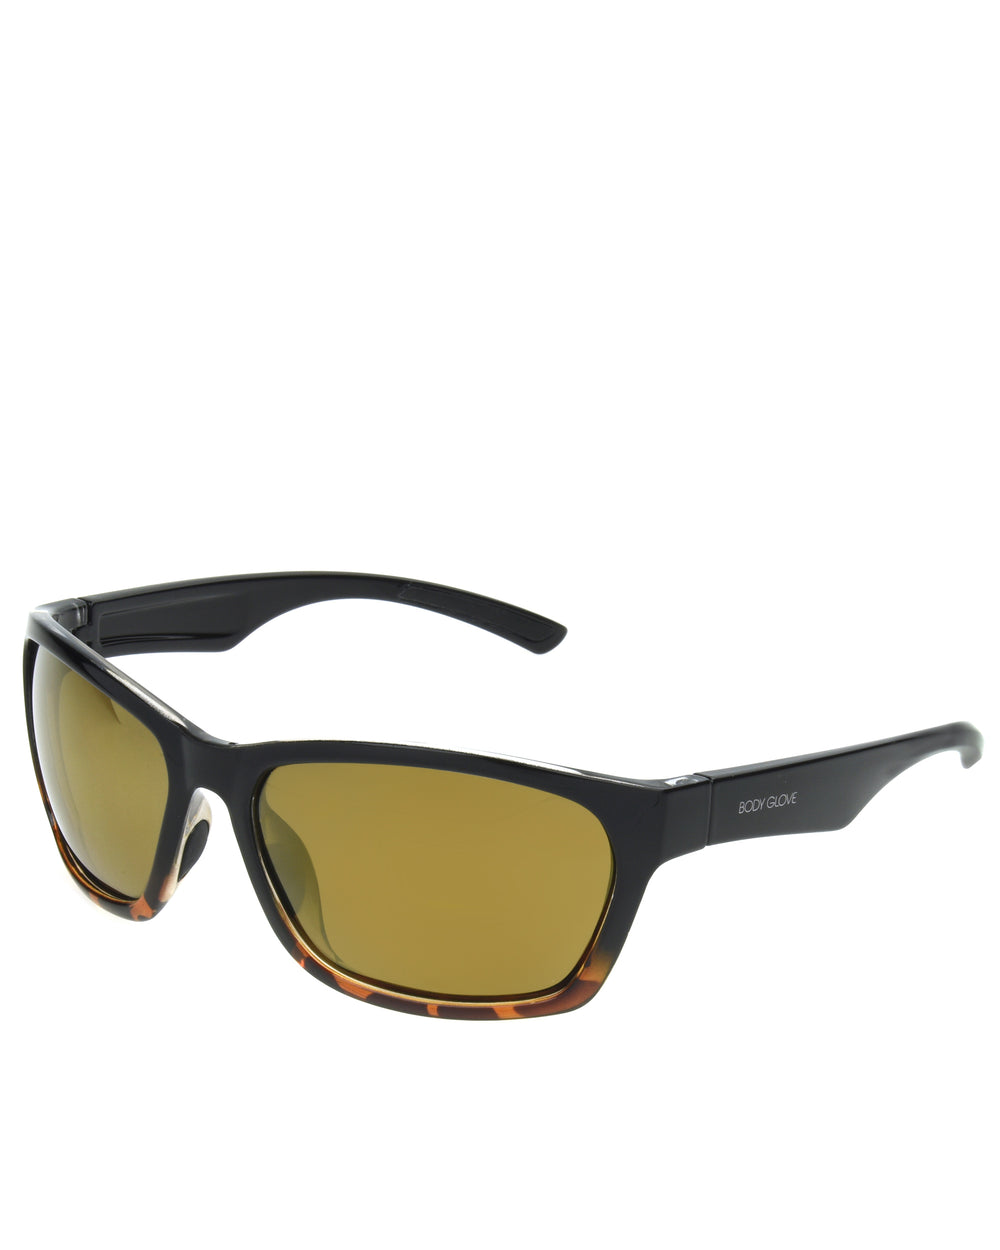 Men's Vapor 1902 Polarized Sunglasses - Shiny Black